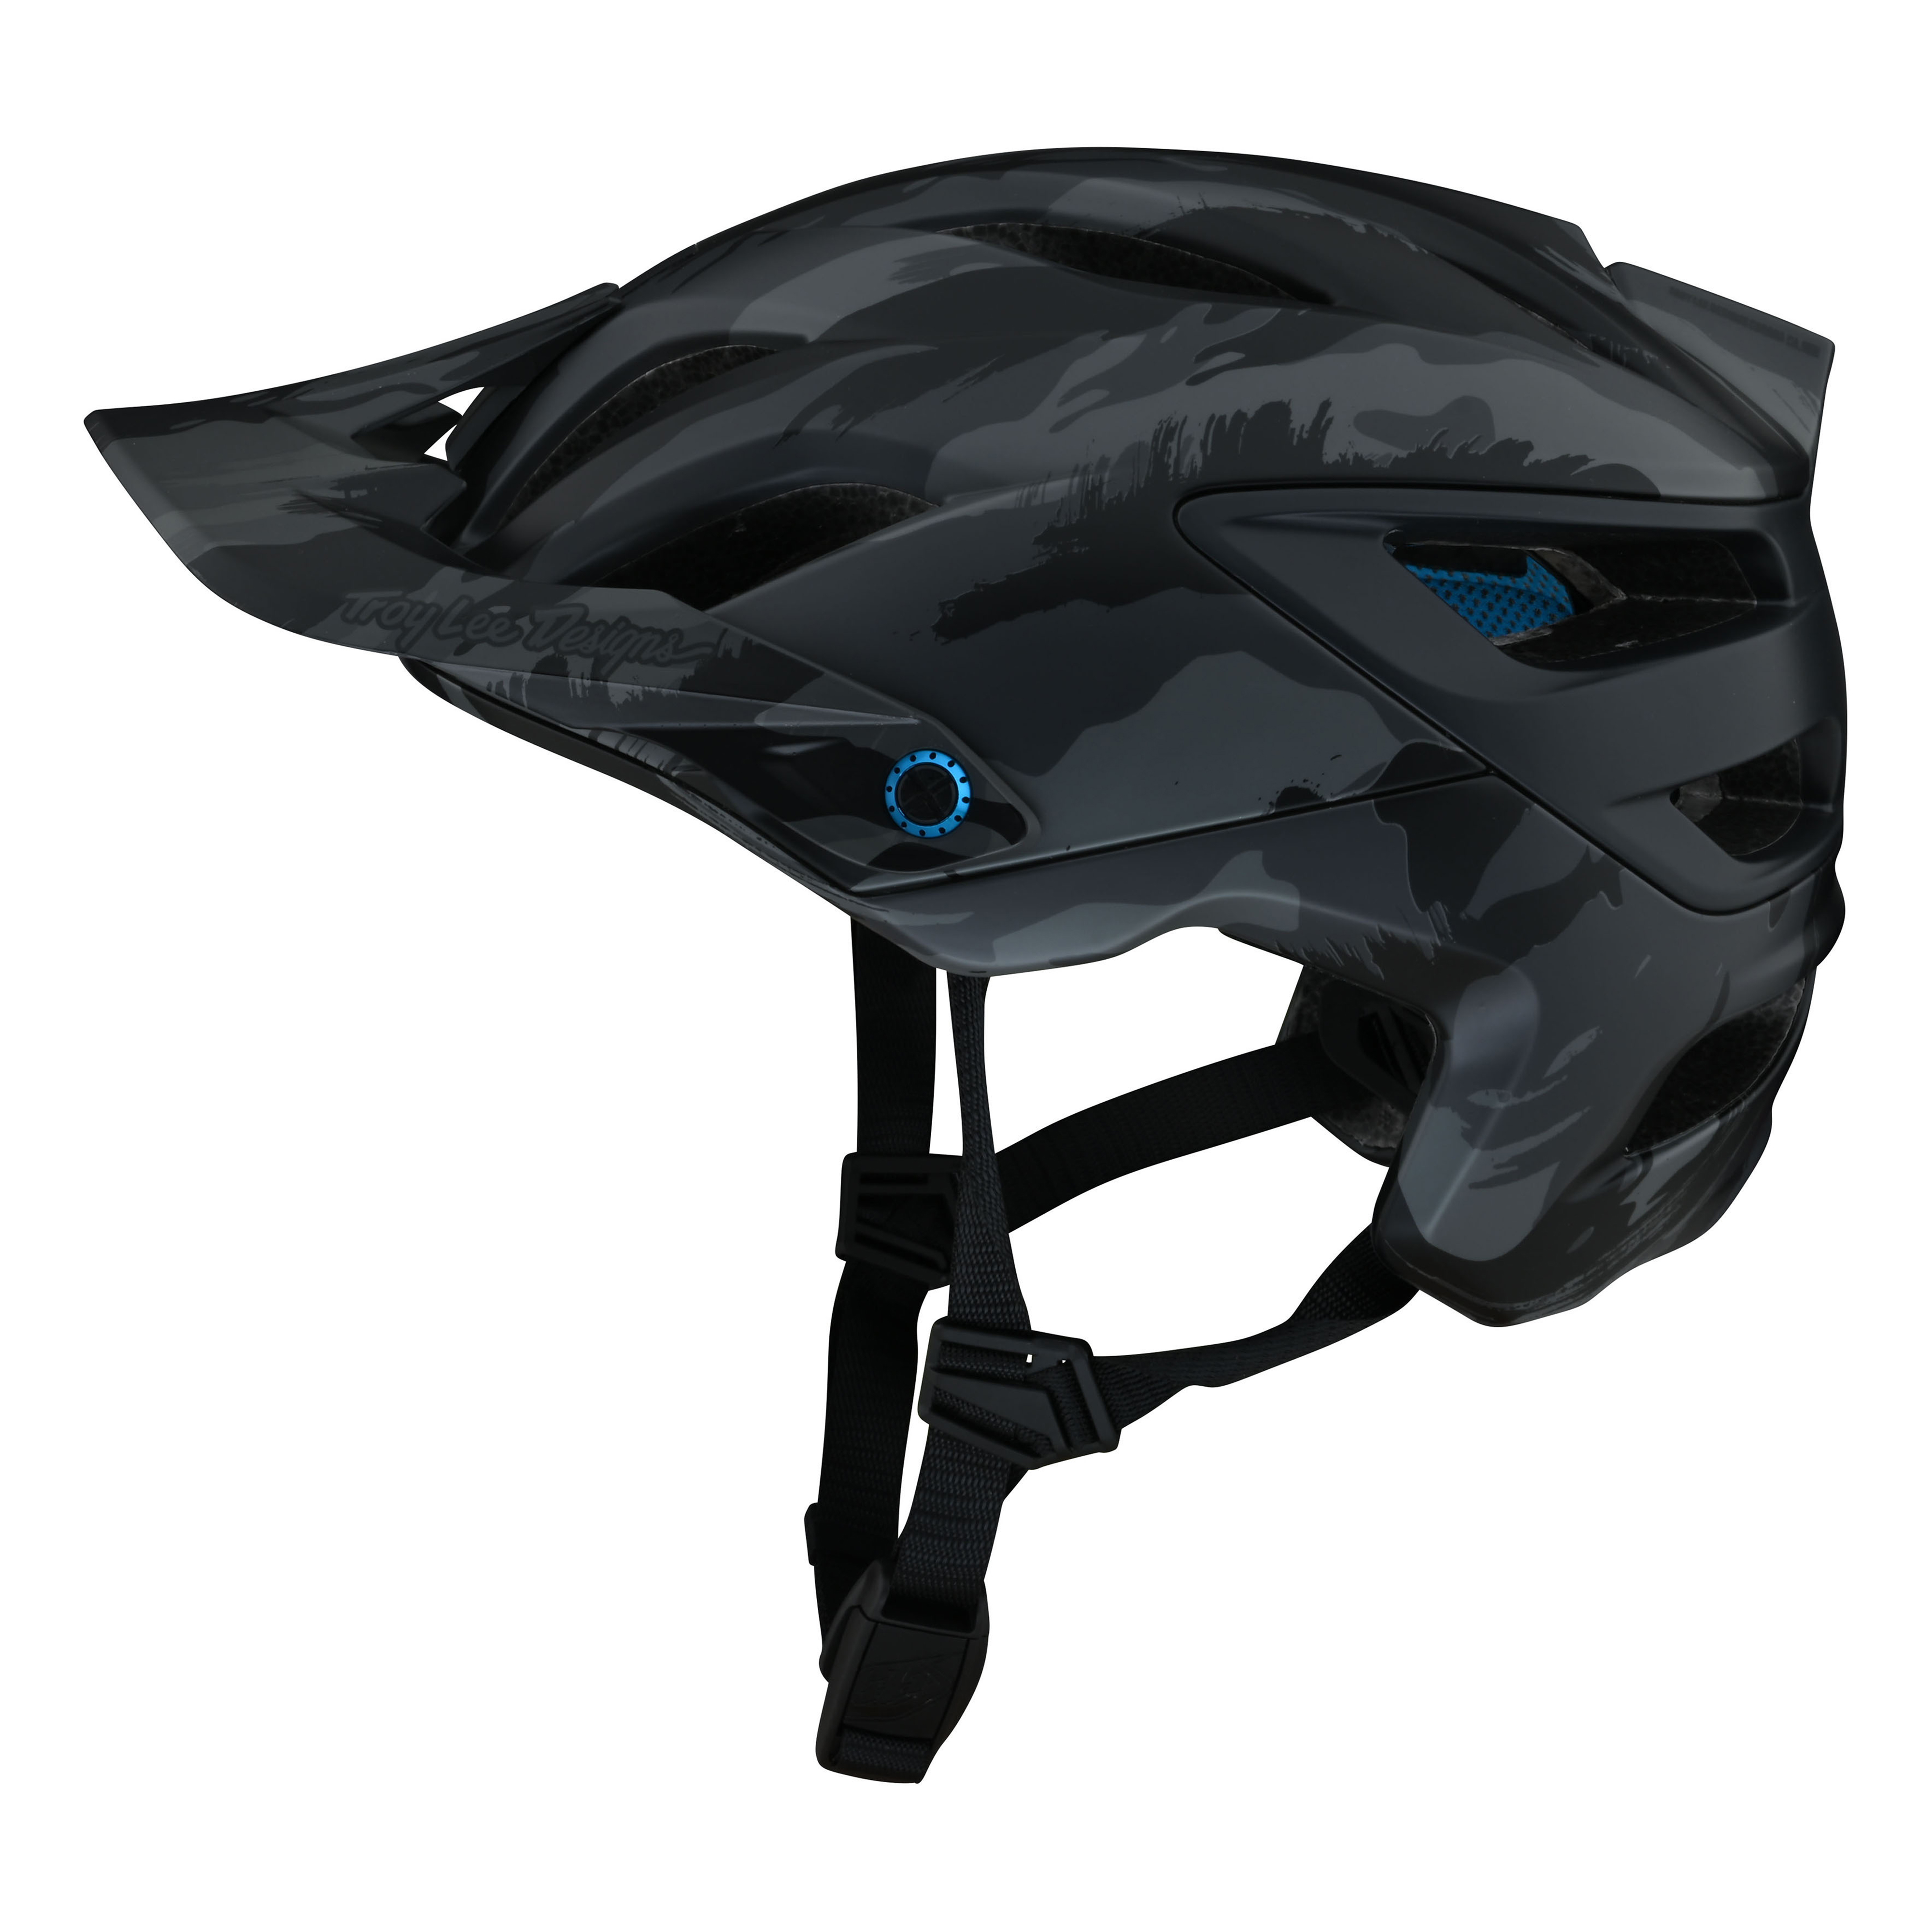 트로이리디자인 A3 MIPS 헬멧 (브러쉬 카모 블루)